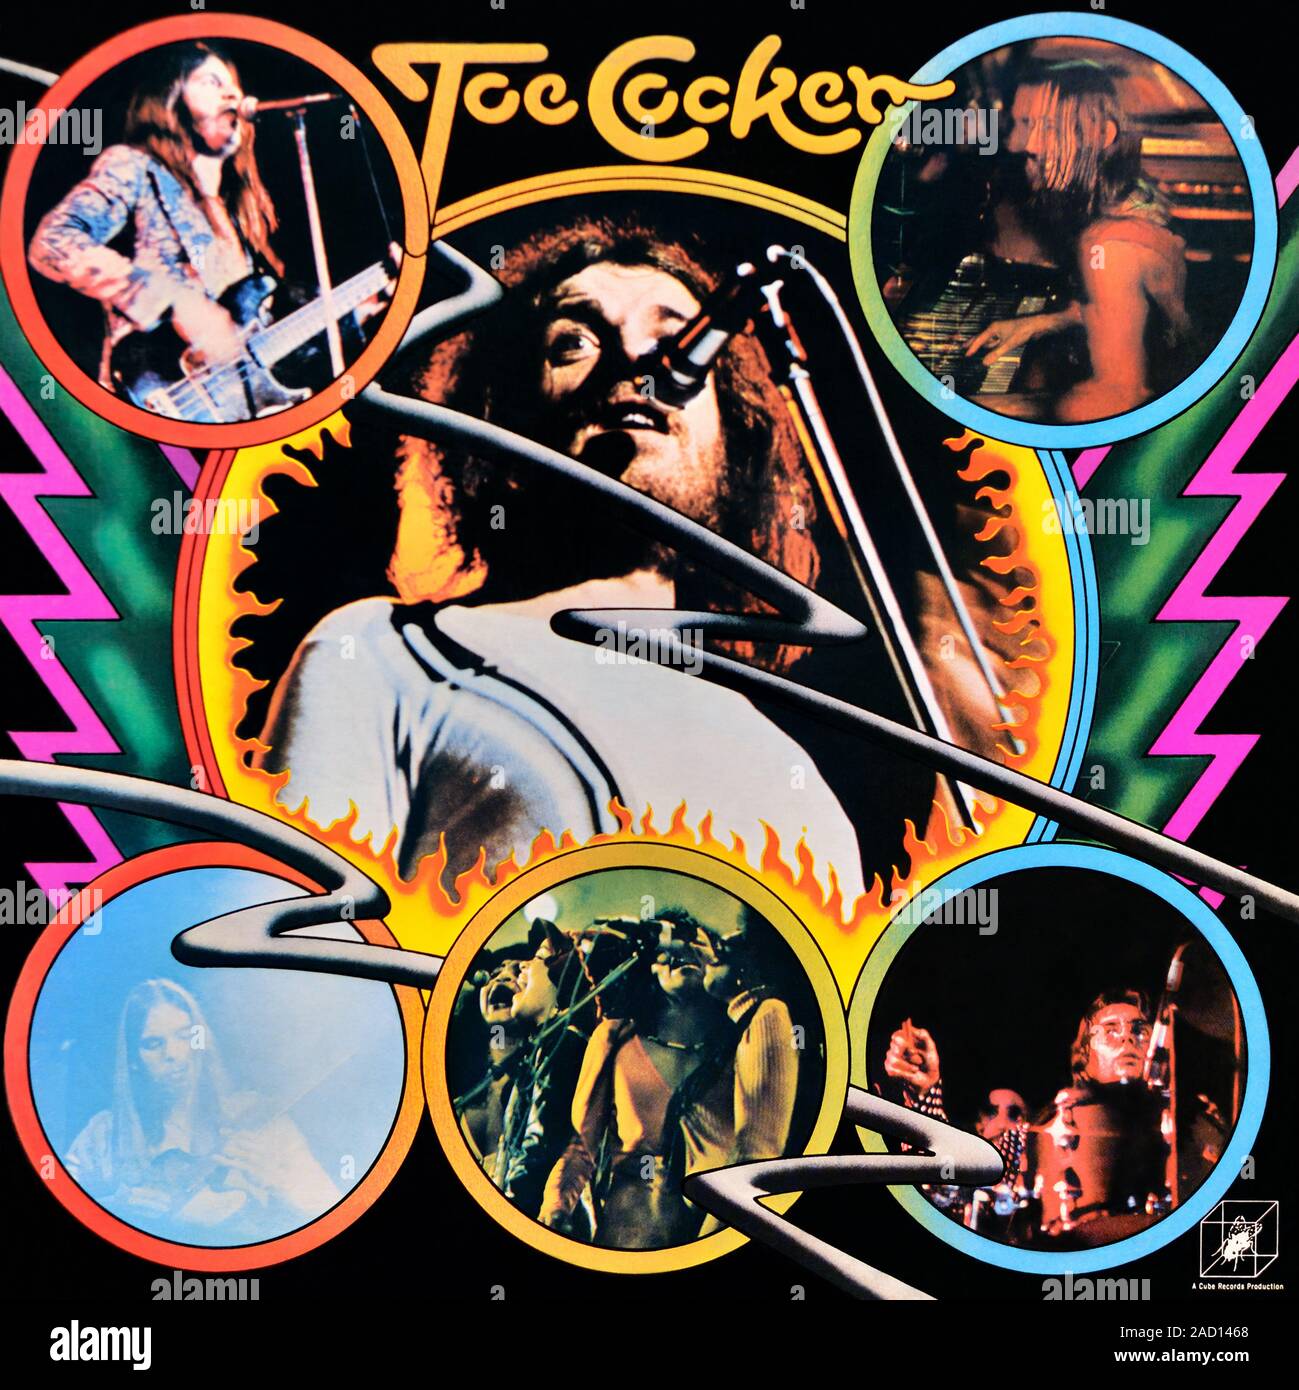 Joe Cocker - original Vinyl Album Cover - Joe Cocker - 1972 Stockfoto